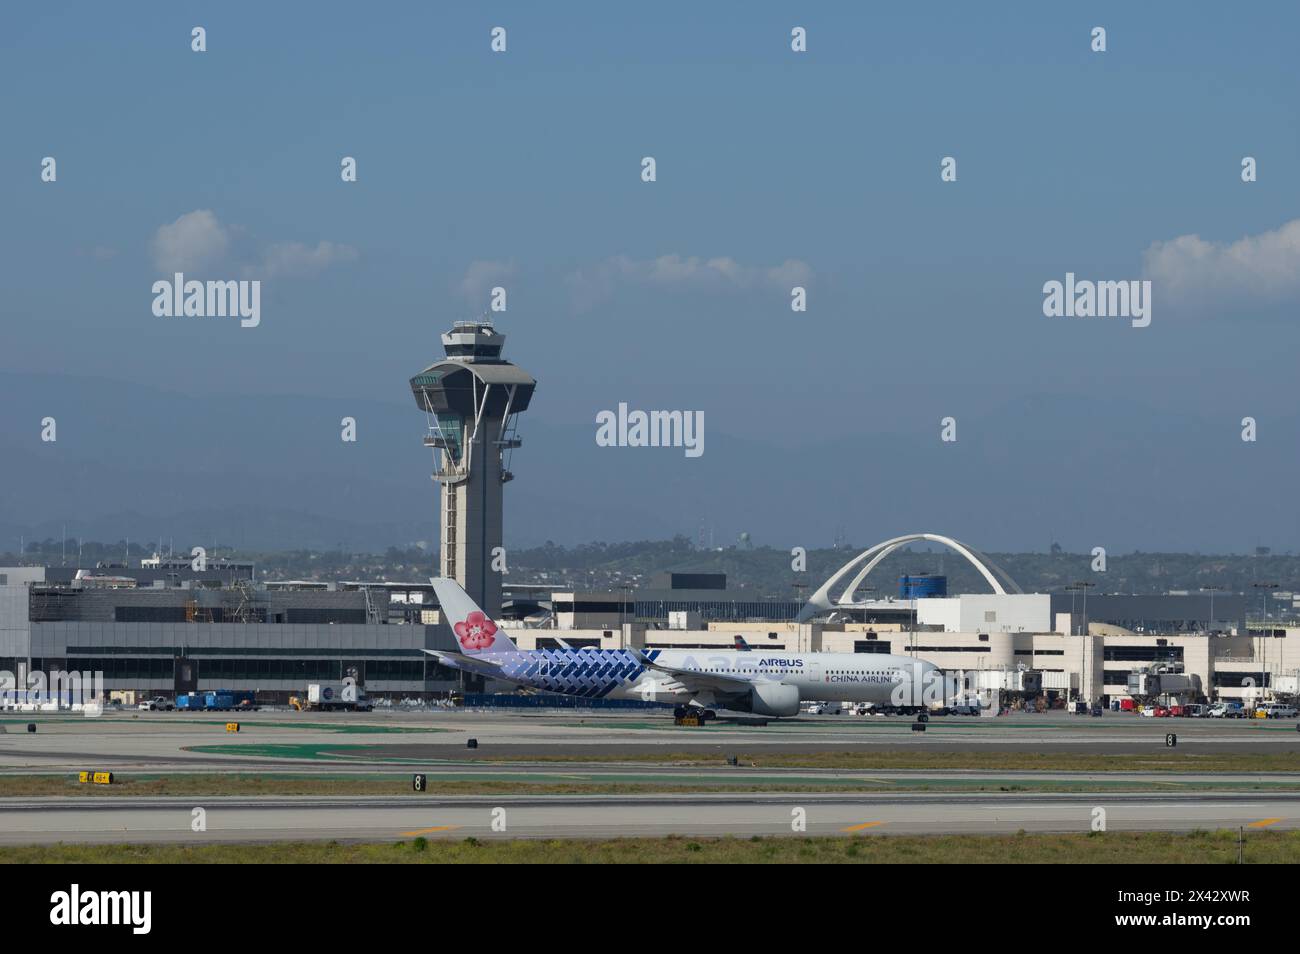 LAX, aéroport international de Los Angeles, en regardant au nord, l'Airbus A350 de China Airlines est montré en train de rouler. Banque D'Images